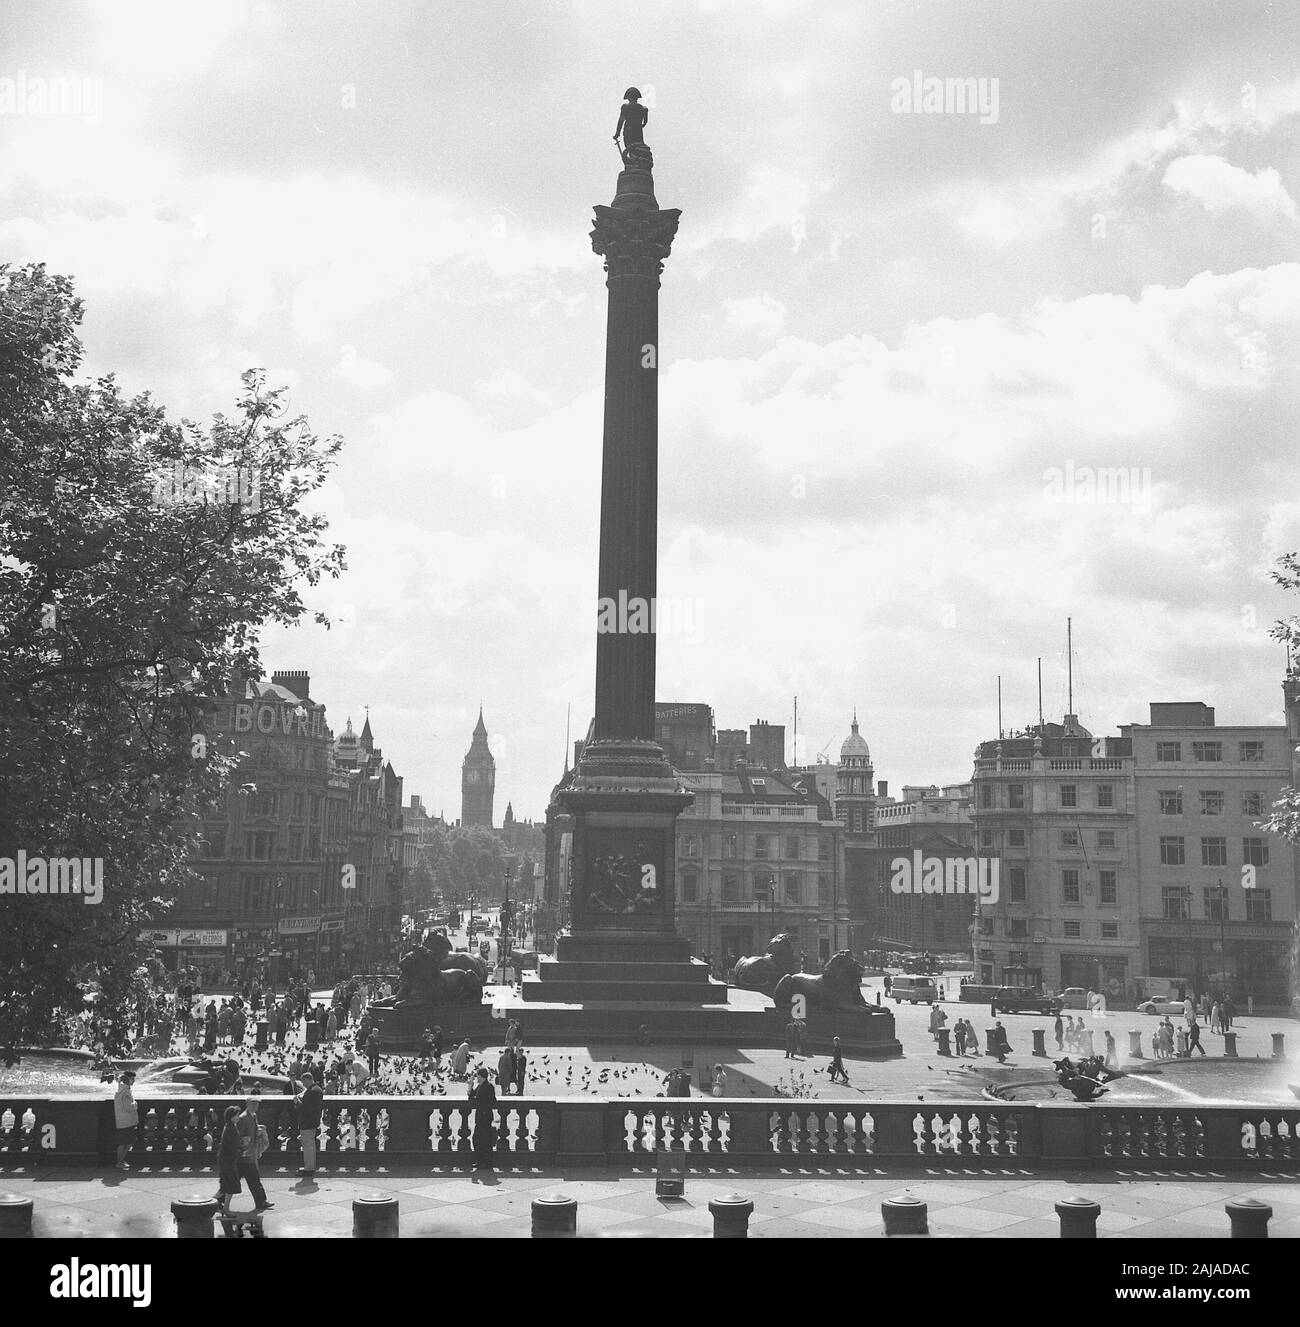 1950er Jahre, historisch, Trafalgar Square, London in dieser Epoche mit dem berühmten Denkmal von Nelsons Säule, das im Jahr 1843 erbaut wurde und Westminster umgibt. Stockfoto